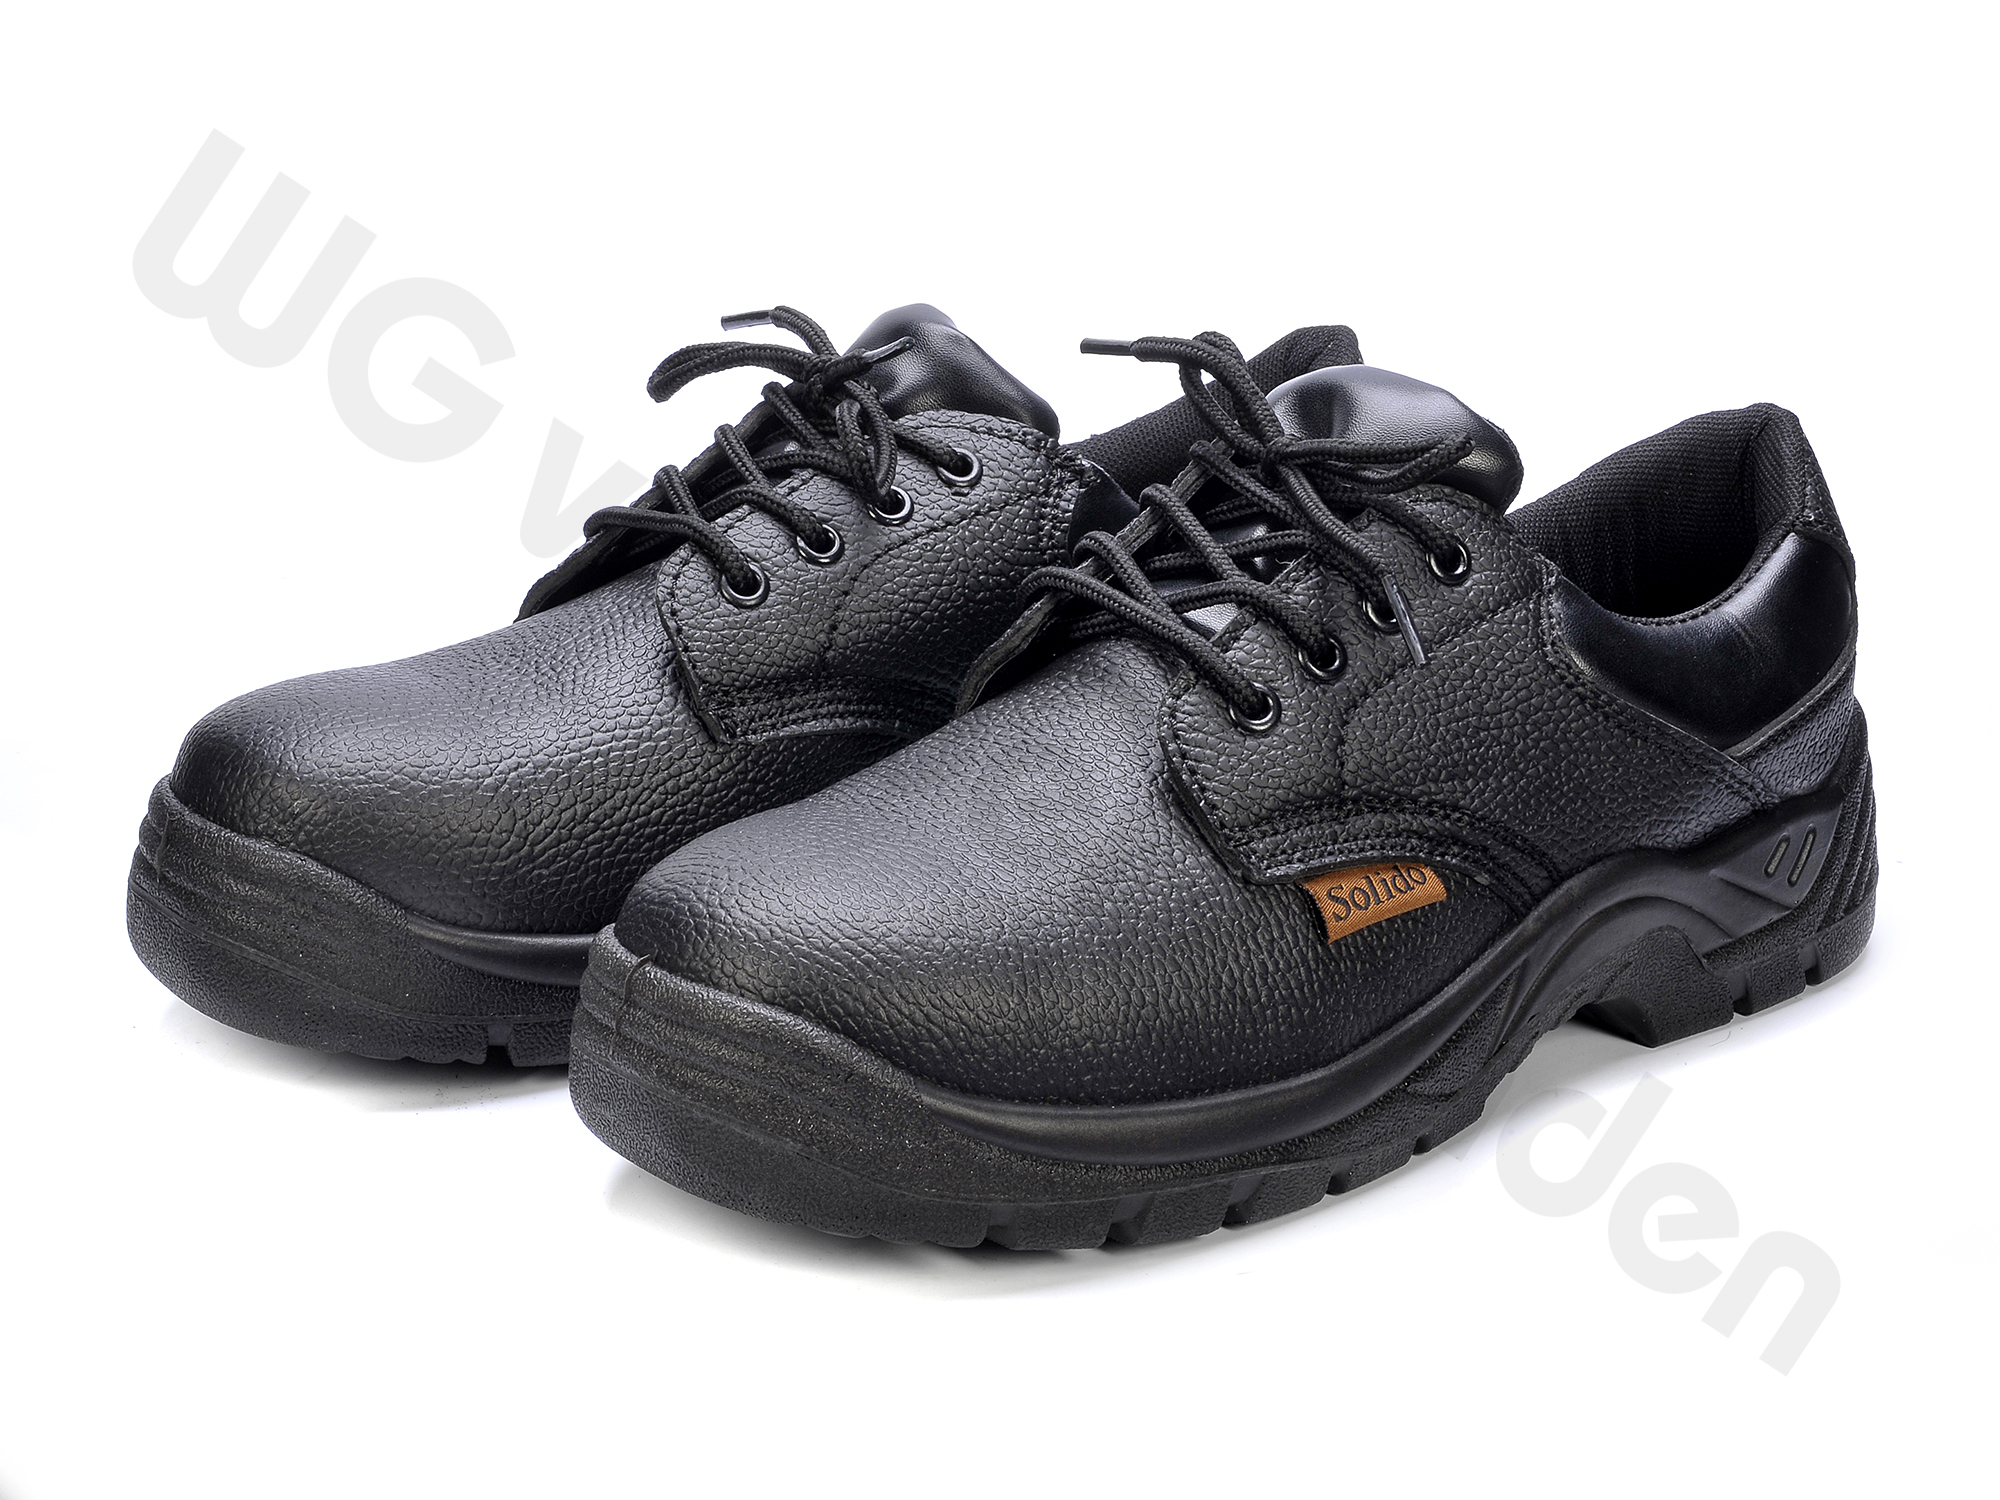 Celsius Paar Honderd jaar Werkschoenen - Schoenen - Werkkleding - Producten | W.G van der Zanden  Webshop